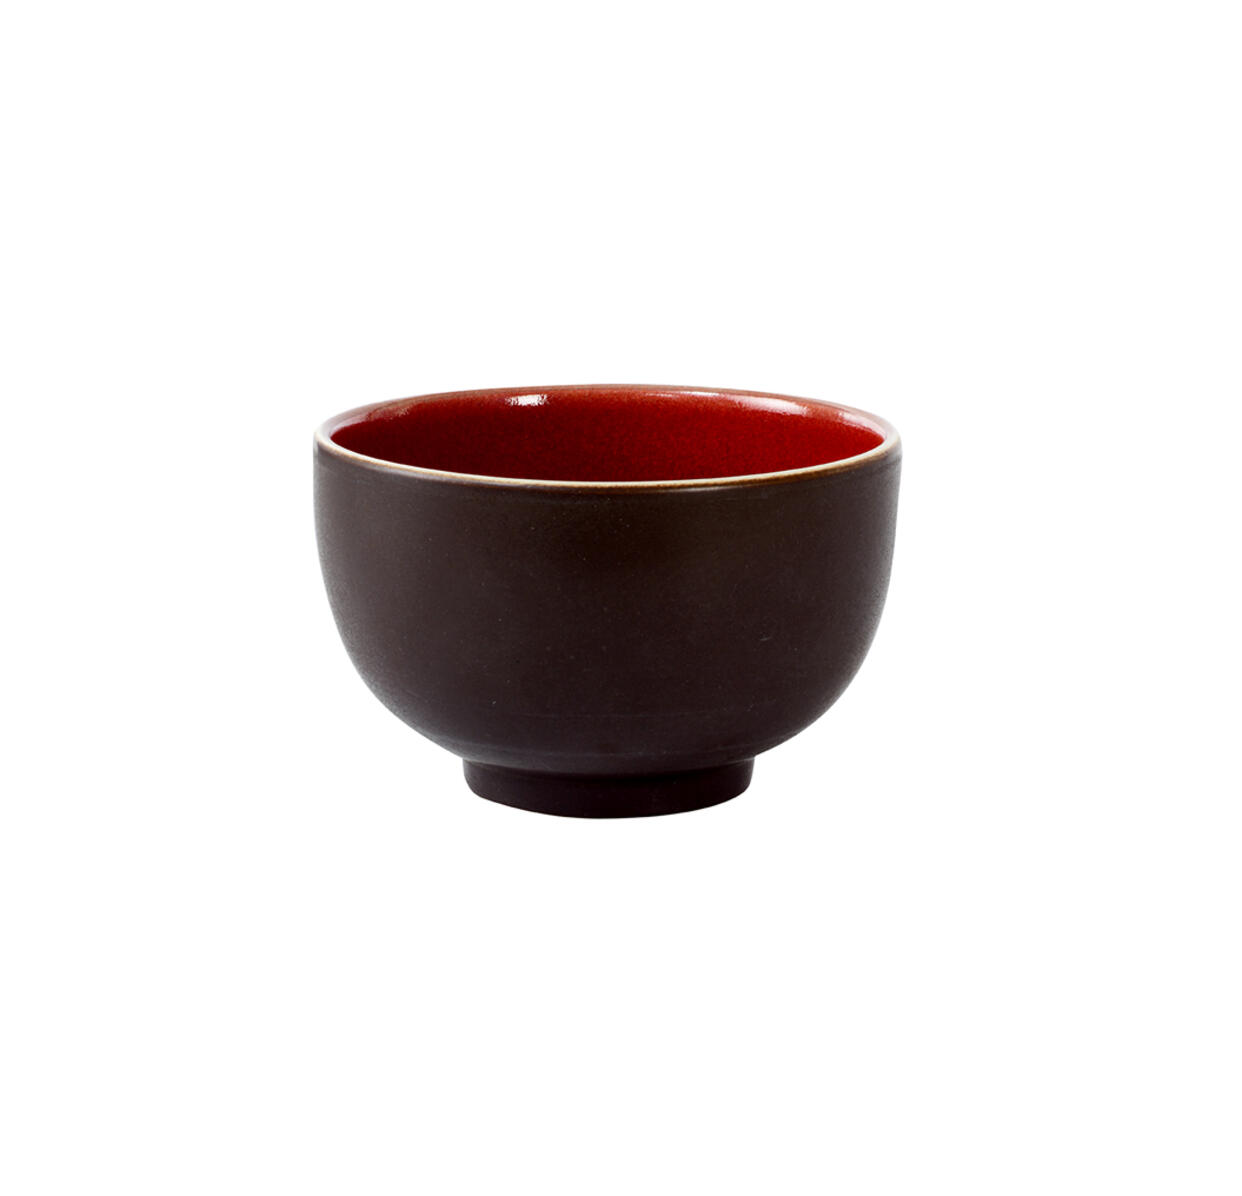 bowl m tourron cerise ceramic manufacturer